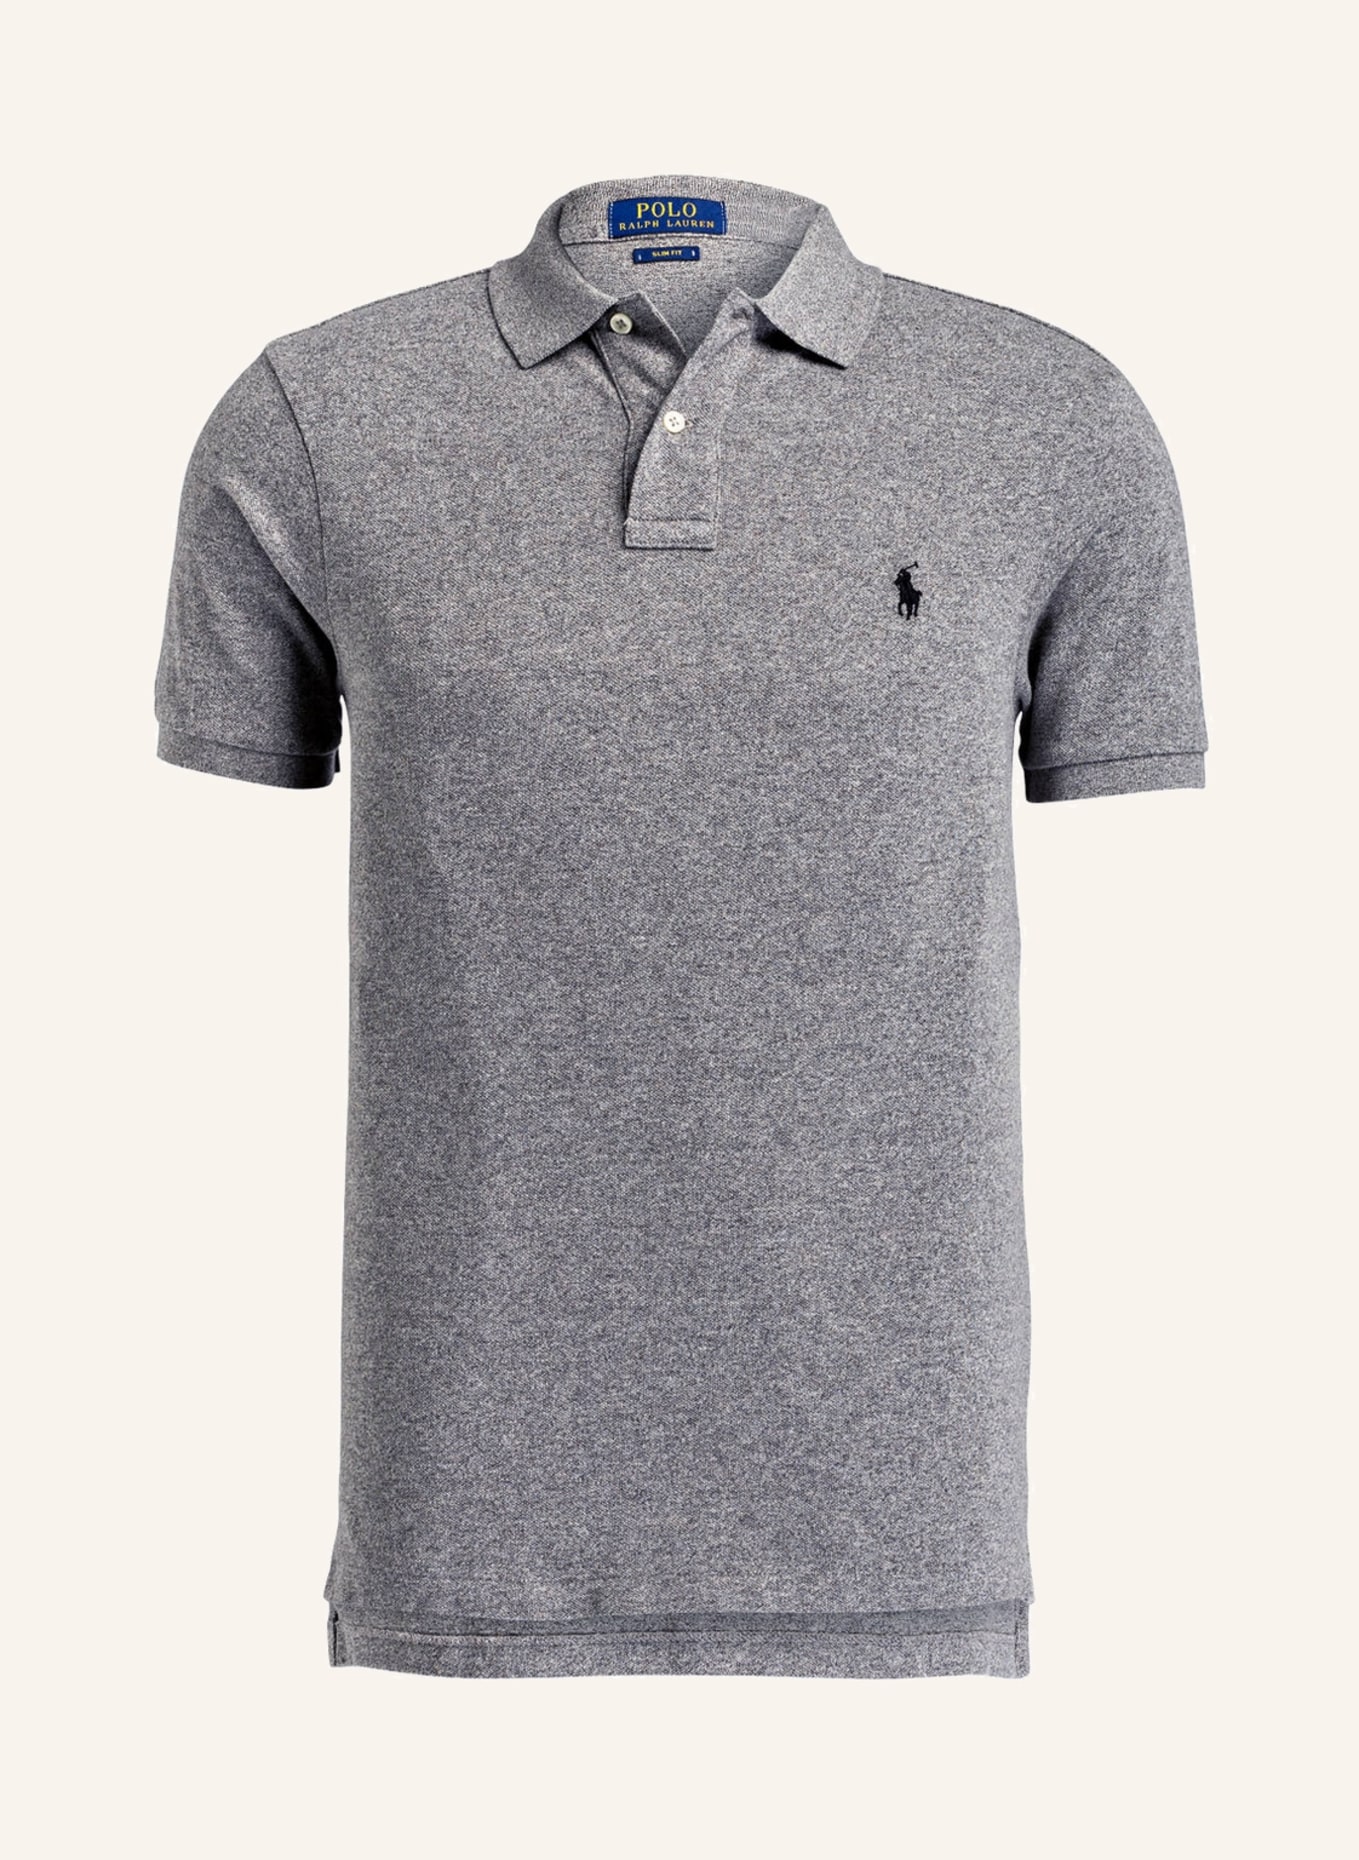 POLO RALPH LAUREN Piqué-Poloshirt Slim Fit, Farbe: GRAU MELIERT (Bild 1)